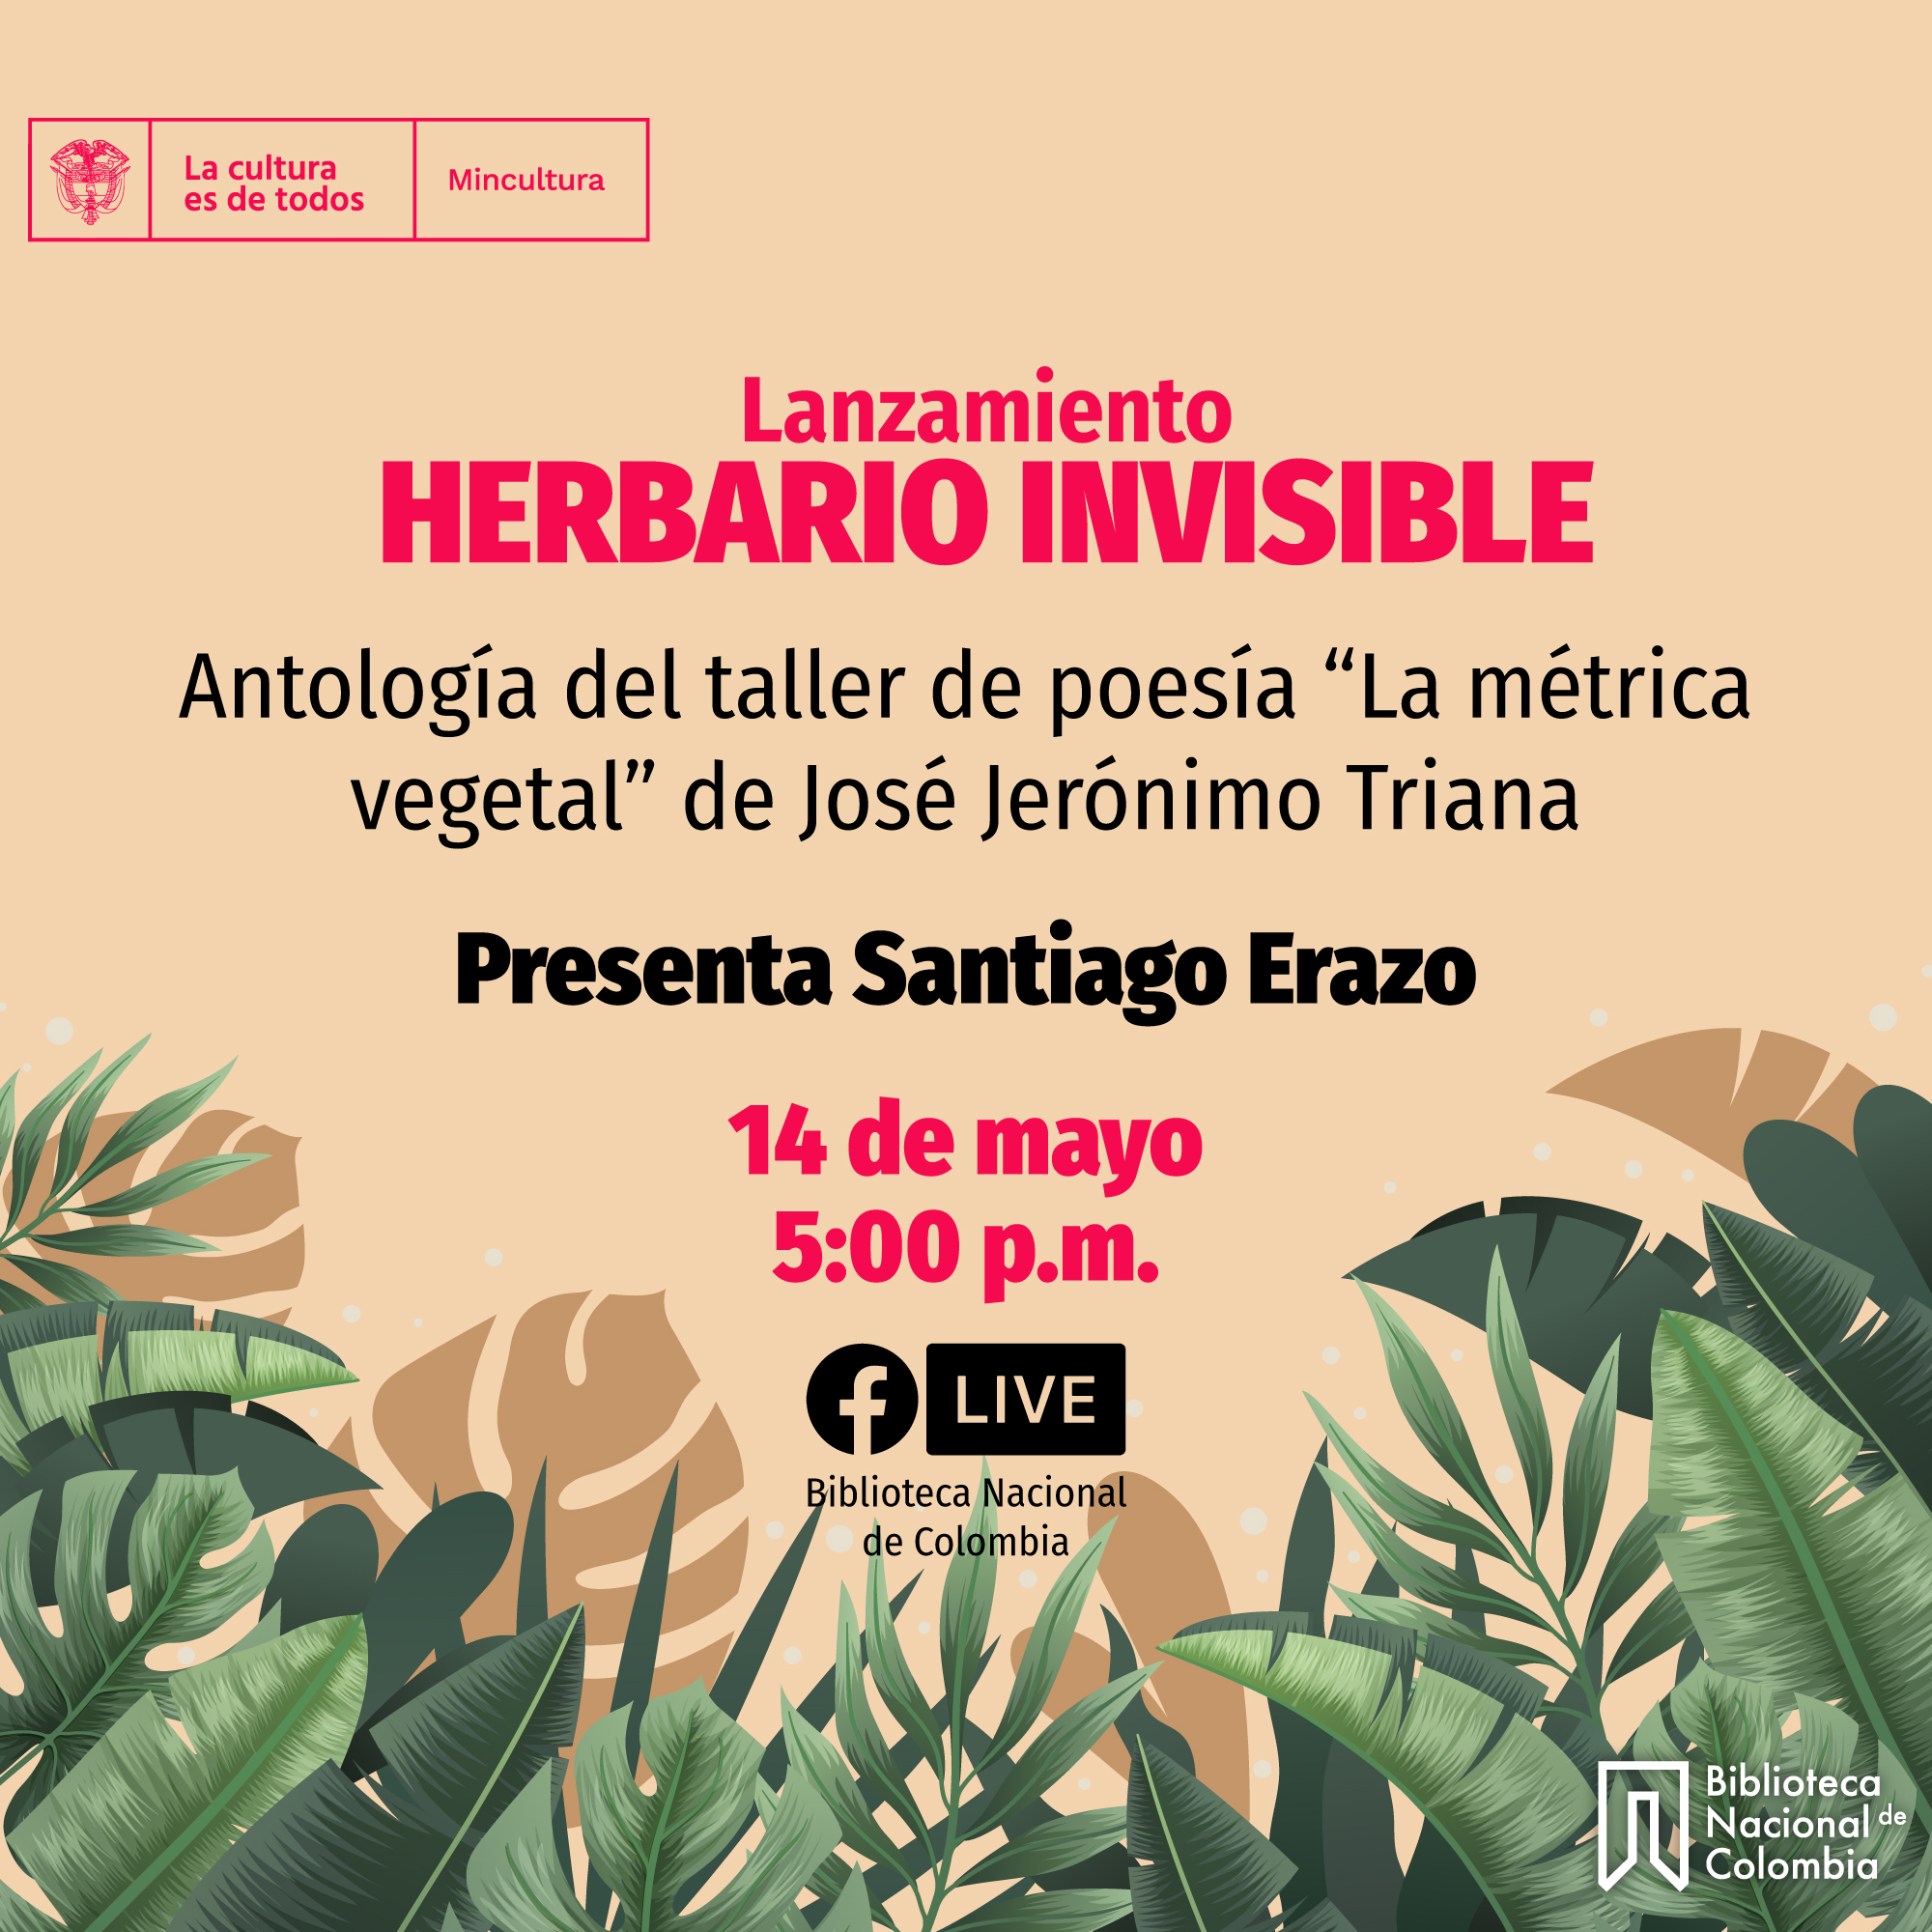 “Herbario invisible” Antología del taller de poesía 